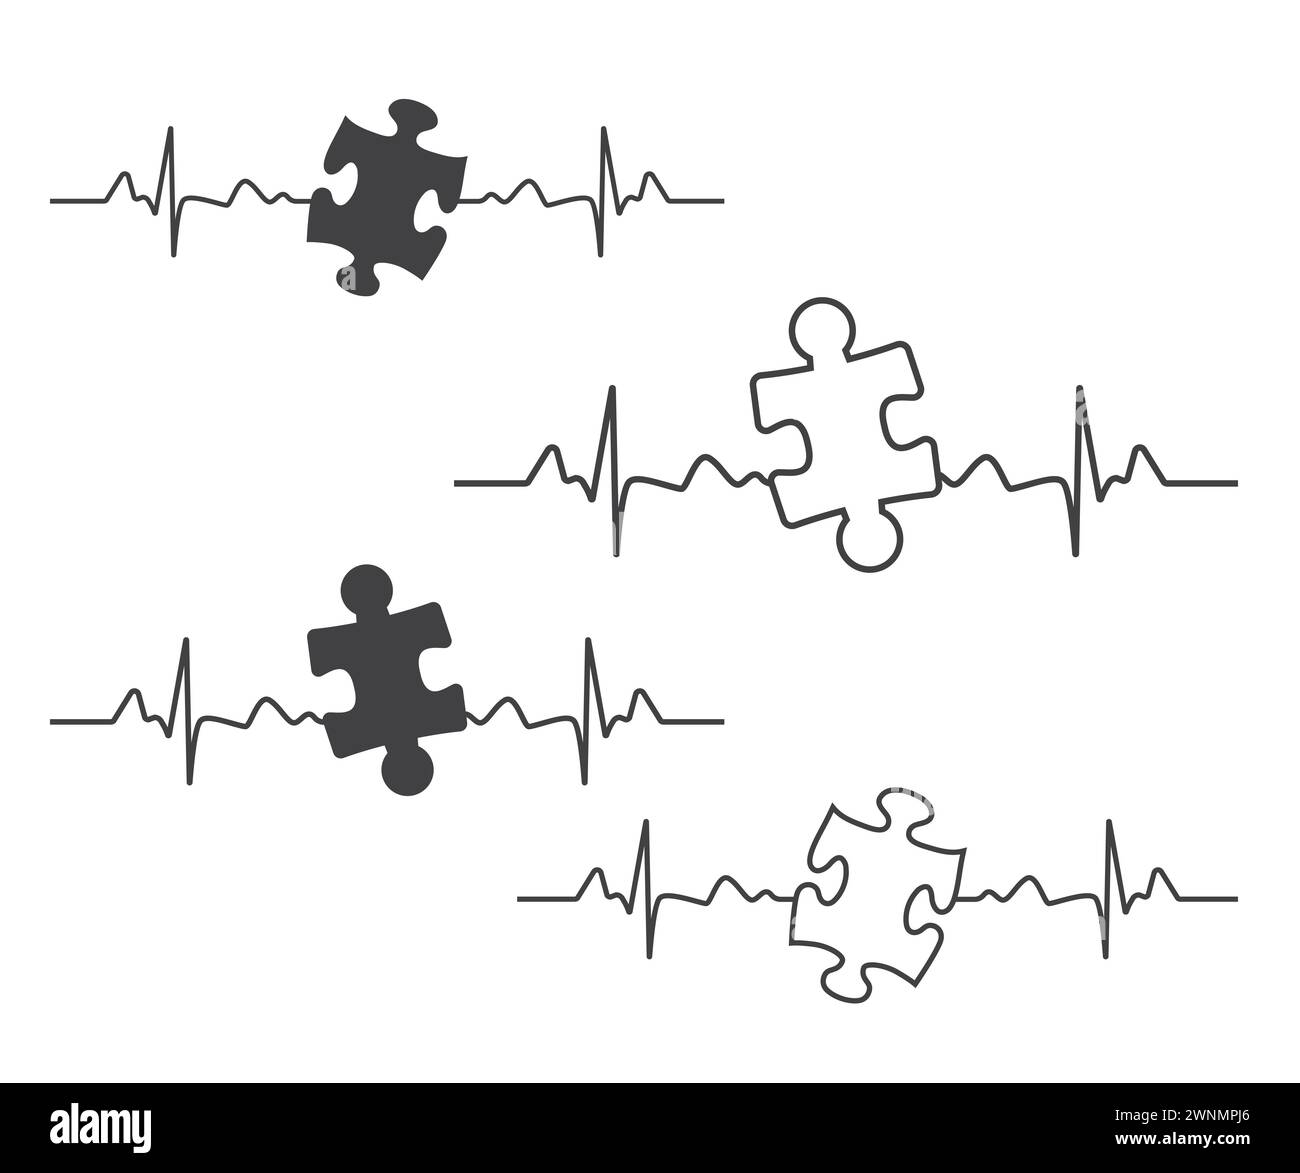 Shape Clipart, Schwarze durchgehende und umrissene Puzzleteile, perfekt ineinander greifend, Symbol für Autismus Awareness, Puzzleteile, digitaler Download, Puzzle Pie Stock Vektor